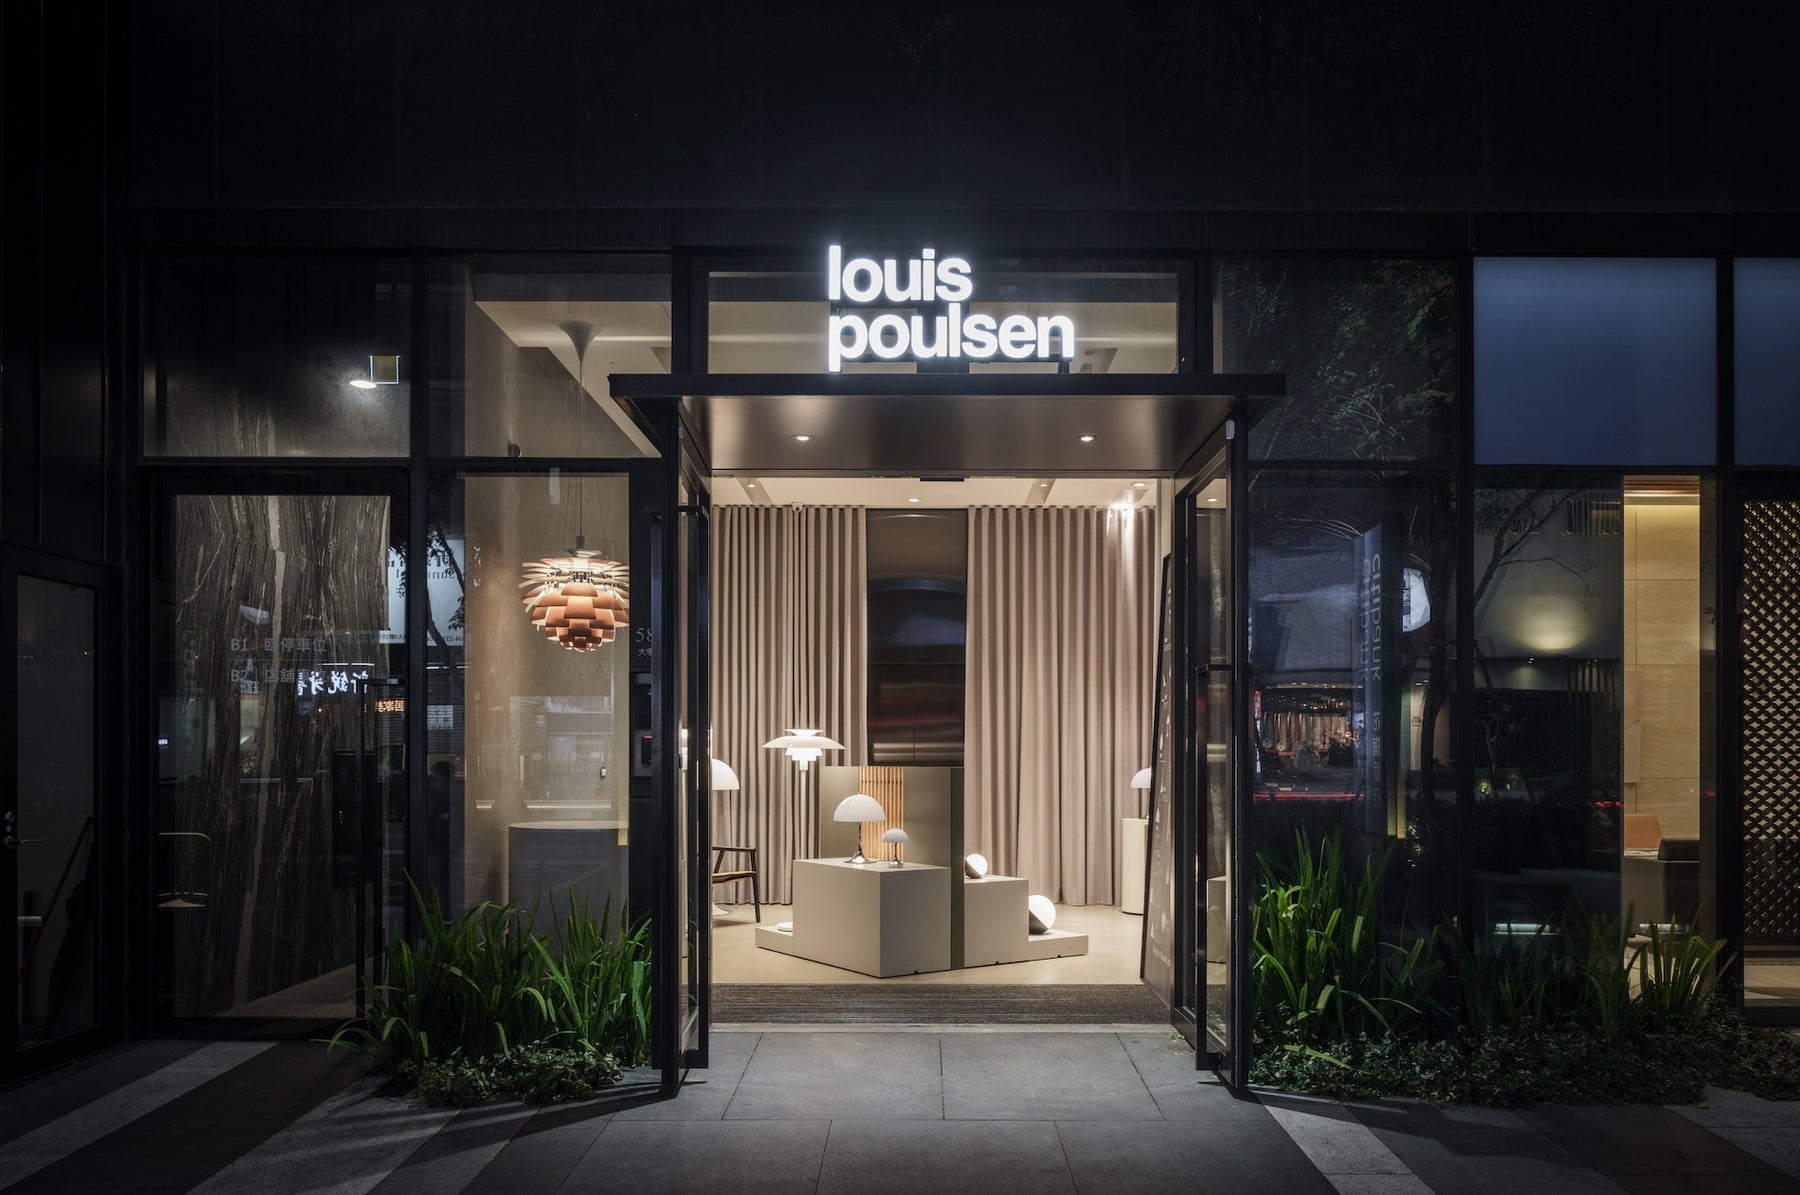 北歐丹麥百年燈飾品牌 Louis Poulsen 台中旗艦店